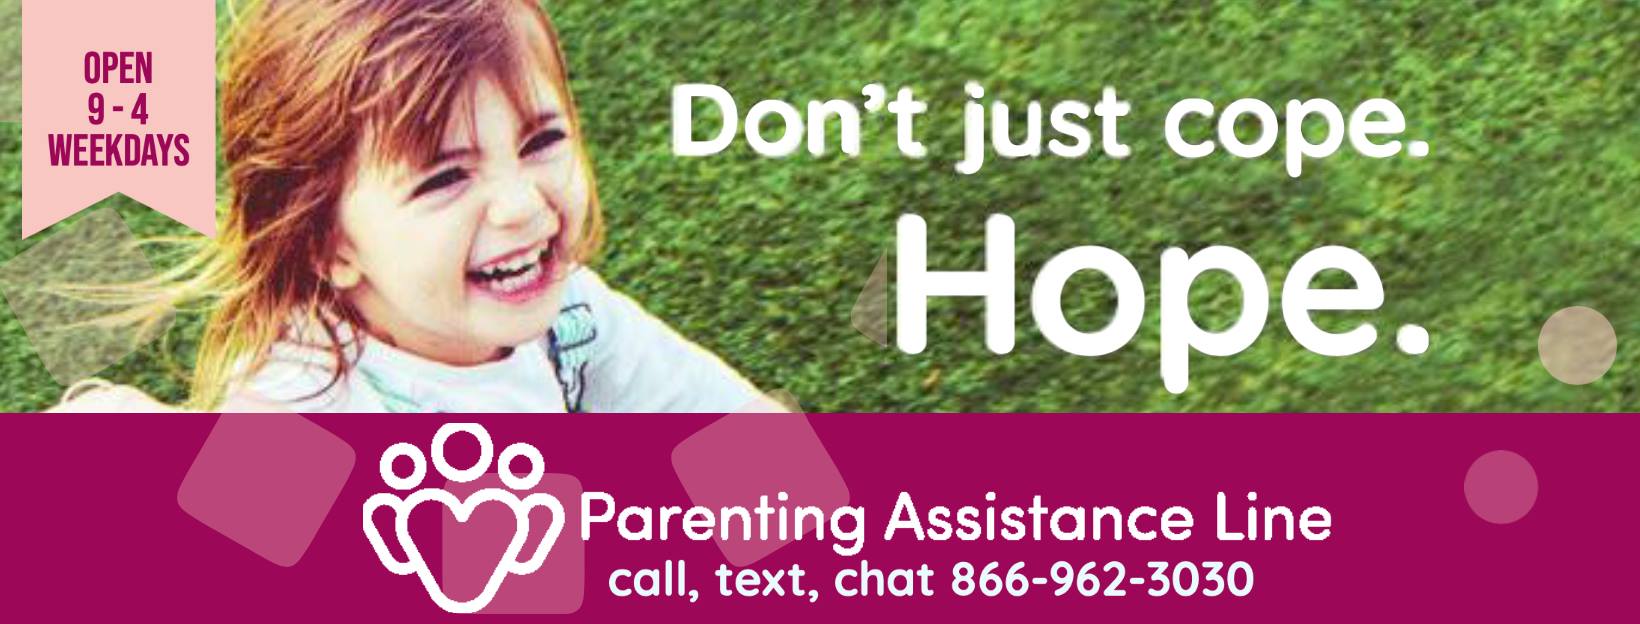 Parenting Assistance Hotline for Alabama